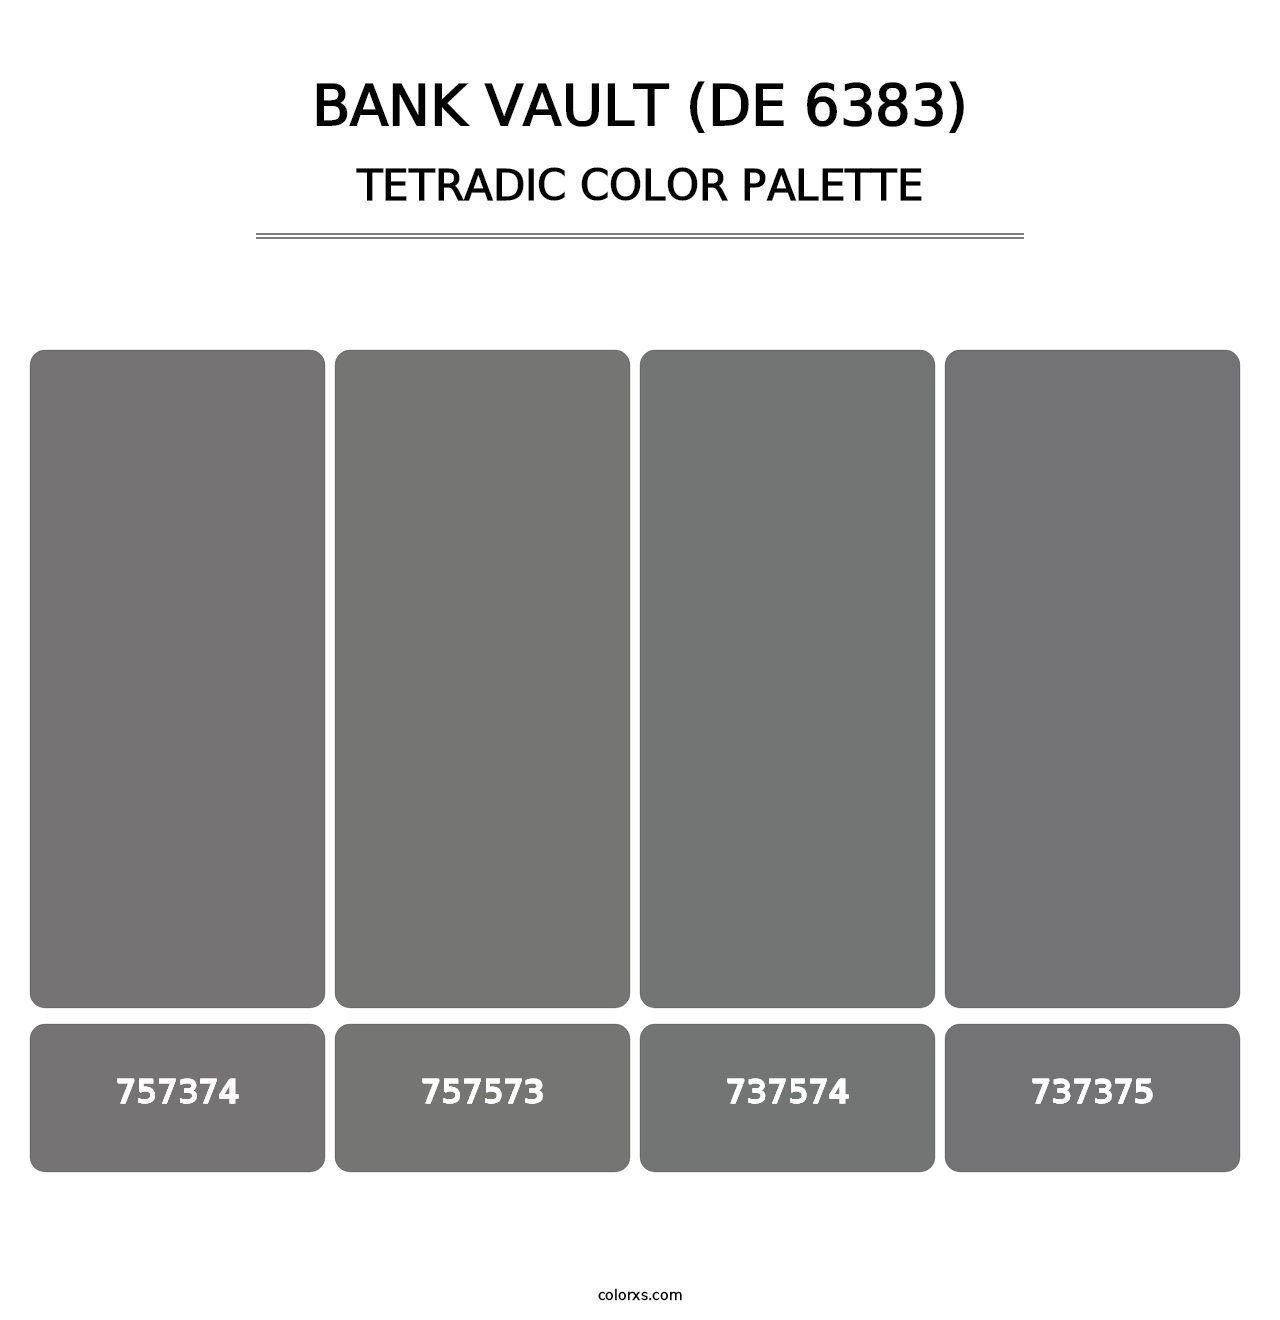 Bank Vault (DE 6383) - Tetradic Color Palette